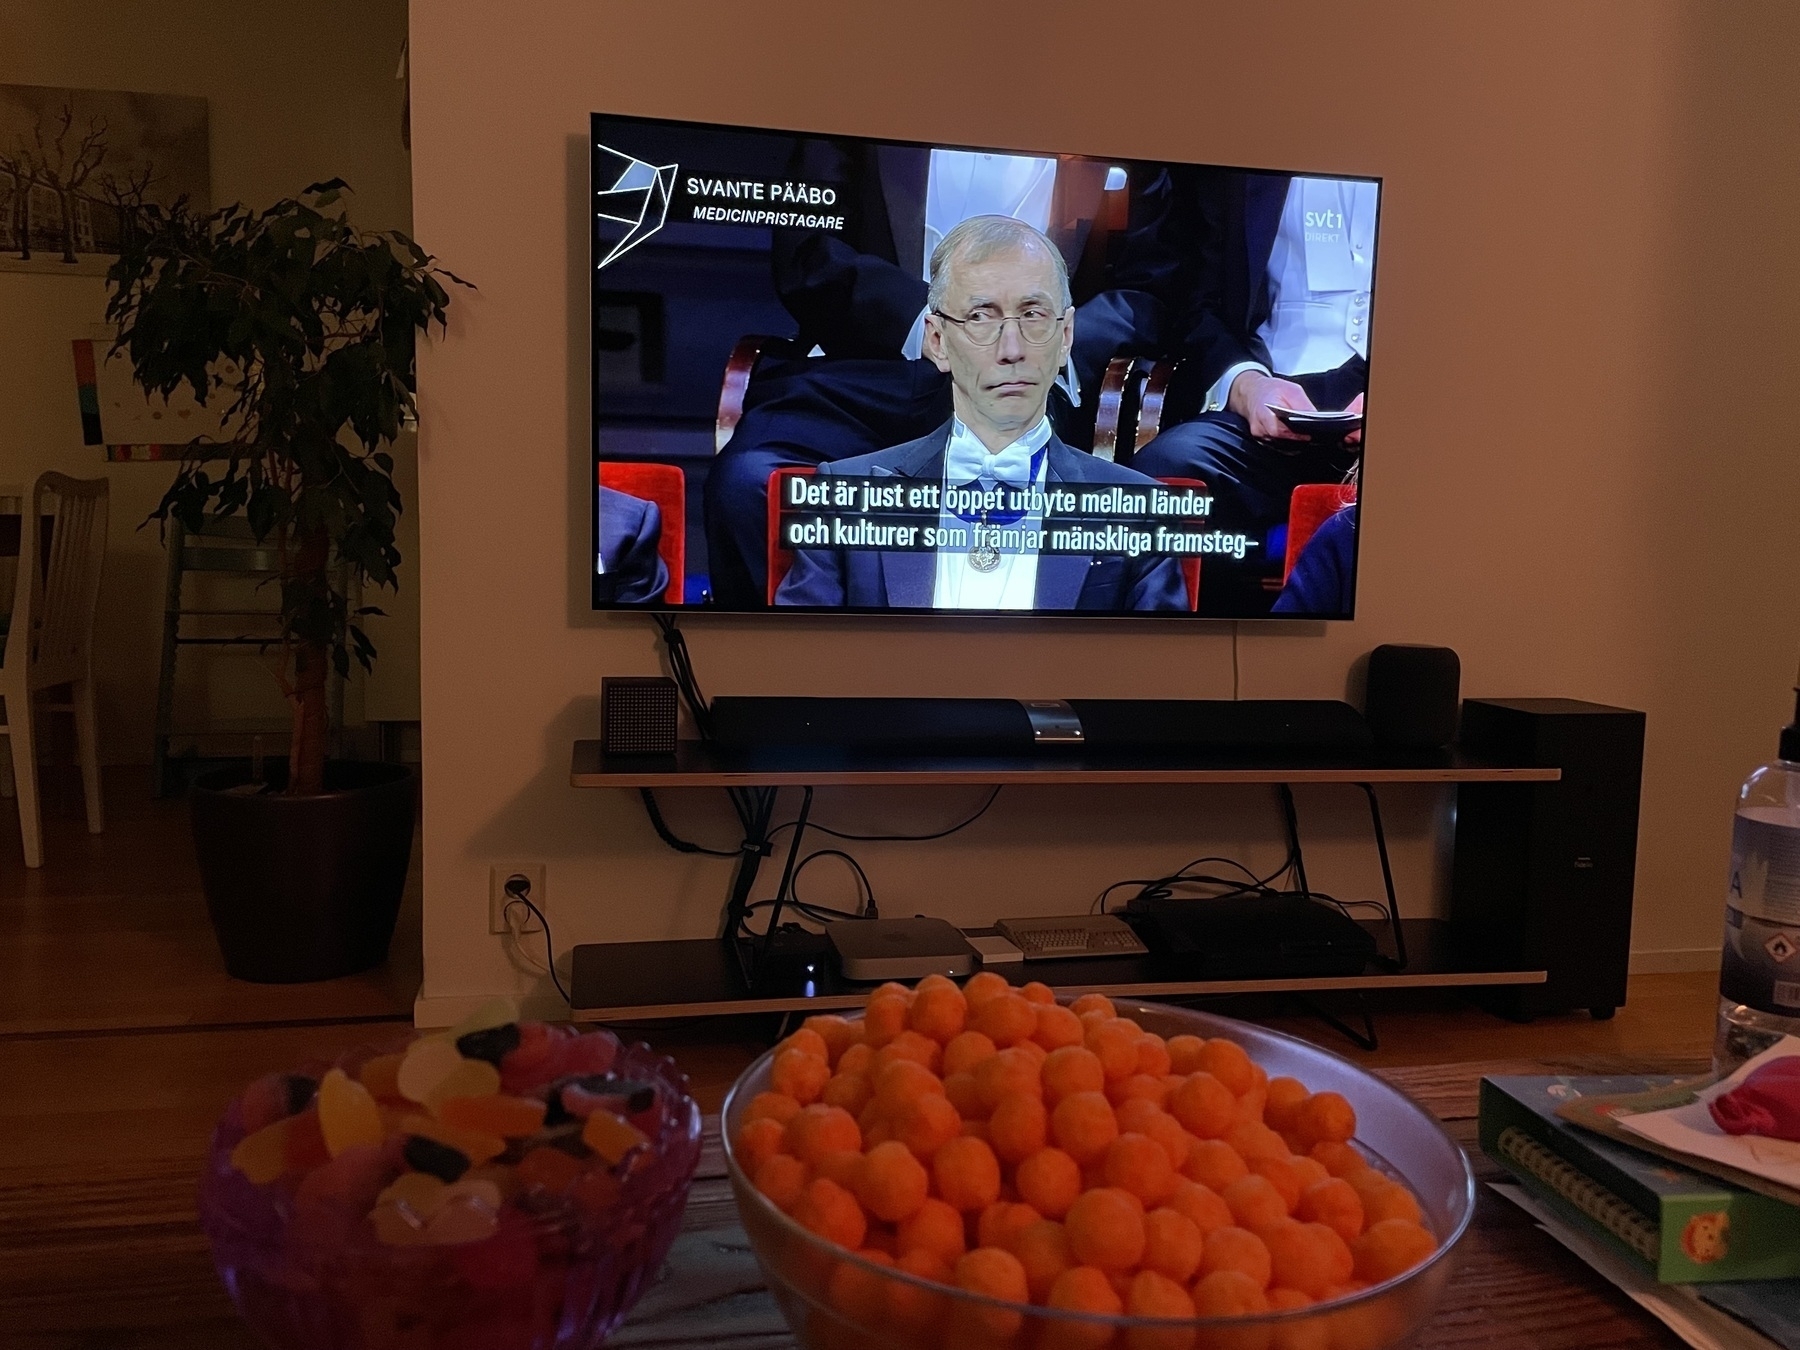 A TV showing the Nobel Prize ceremony, highlighting Svante Pääbo